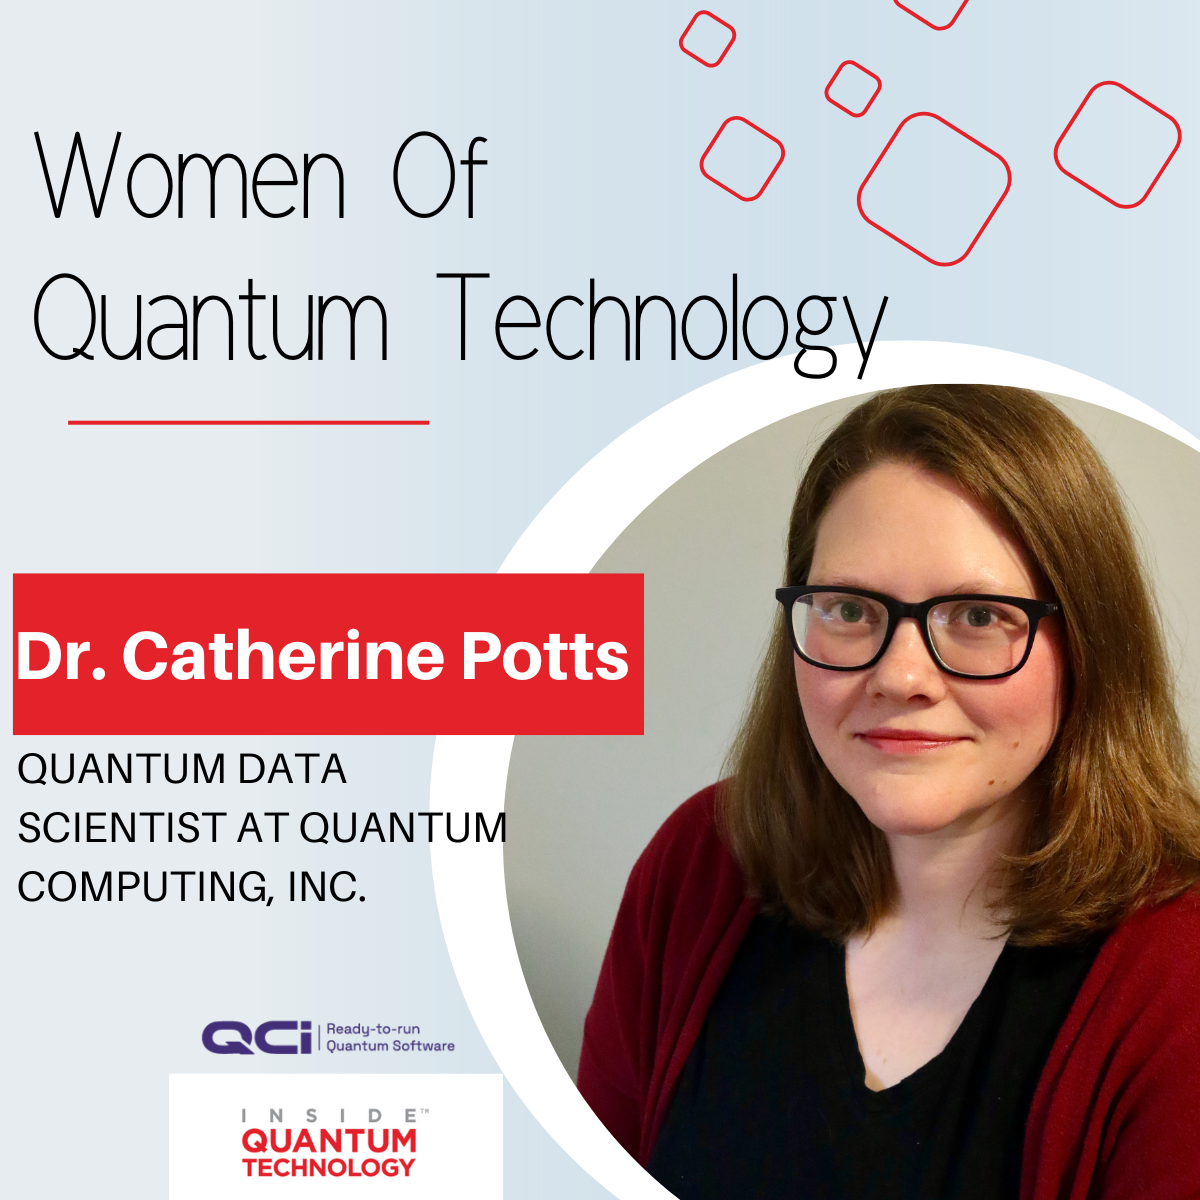 Tiến sĩ Catherine Potts của Quantum Computing Inc. nói về việc chuyển đổi sang ngành công nghiệp lượng tử và các cách để làm cho lĩnh vực này trở nên đa dạng hơn.